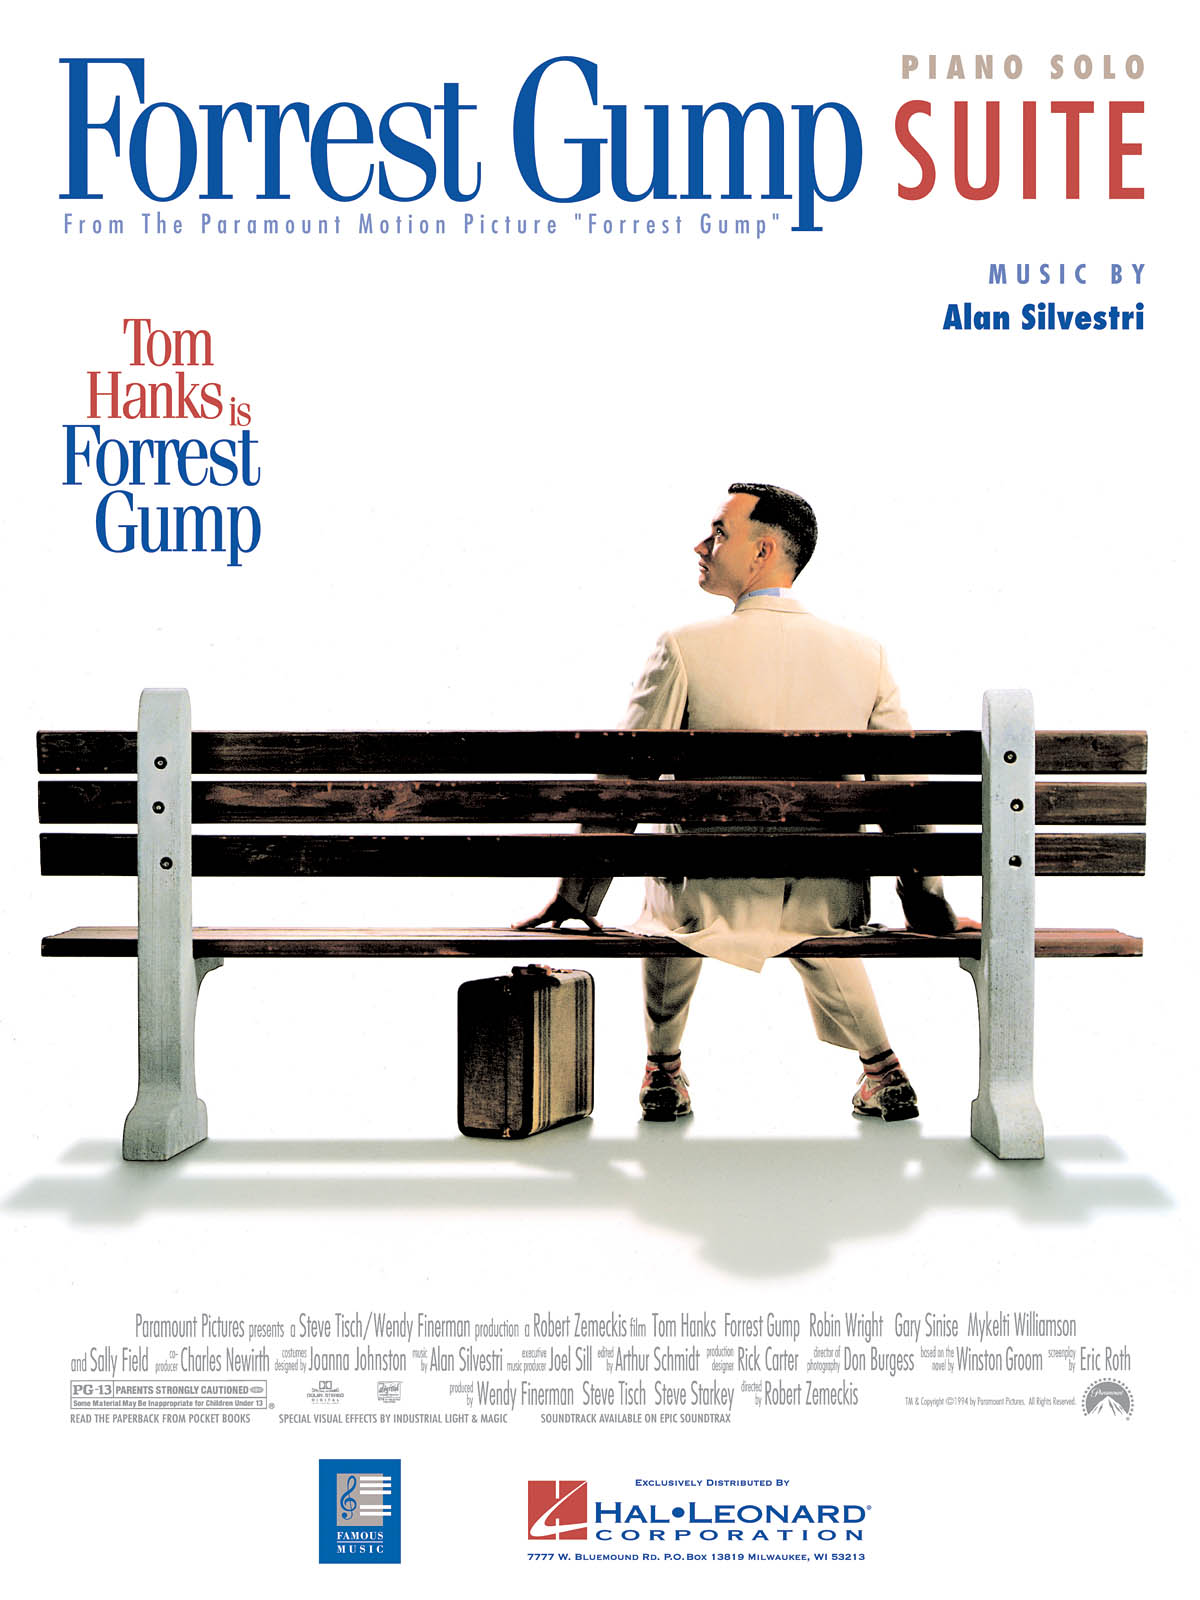 Forrest Gump Suite (Piano) - filmové melodie pro klavír